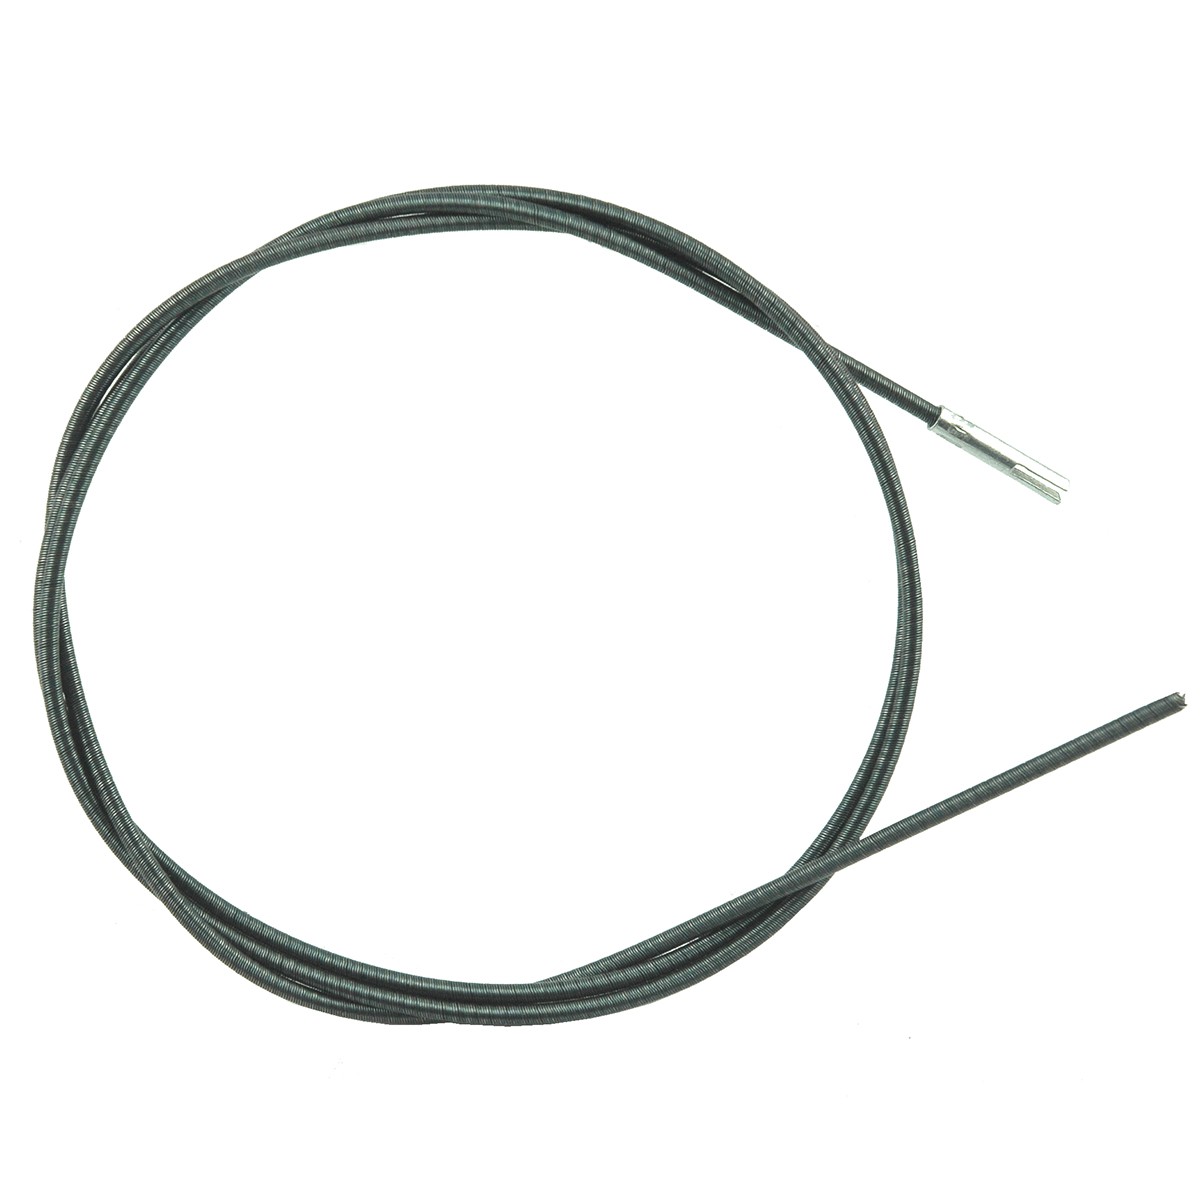 Metrový kabel bez pancéřování 1200 mm / Yanmar